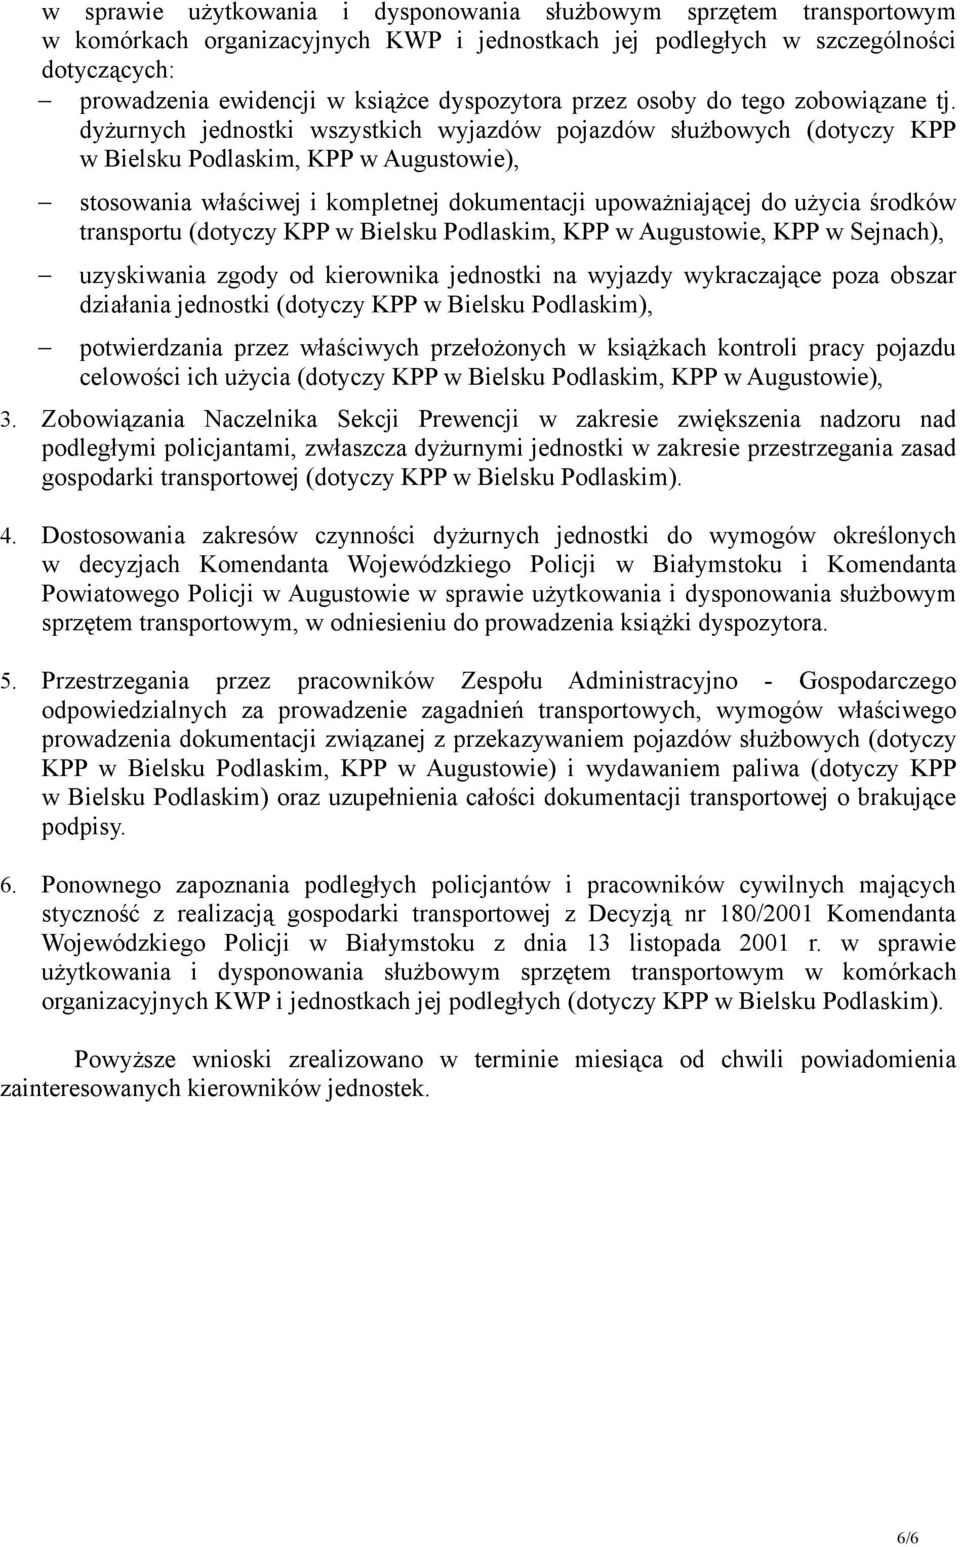 dyżurnych jednostki wszystkich wyjazdów pojazdów służbowych (dotyczy KPP w Bielsku Podlaskim, KPP w Augustowie), stosowania właściwej i kompletnej dokumentacji upoważniającej do użycia środków